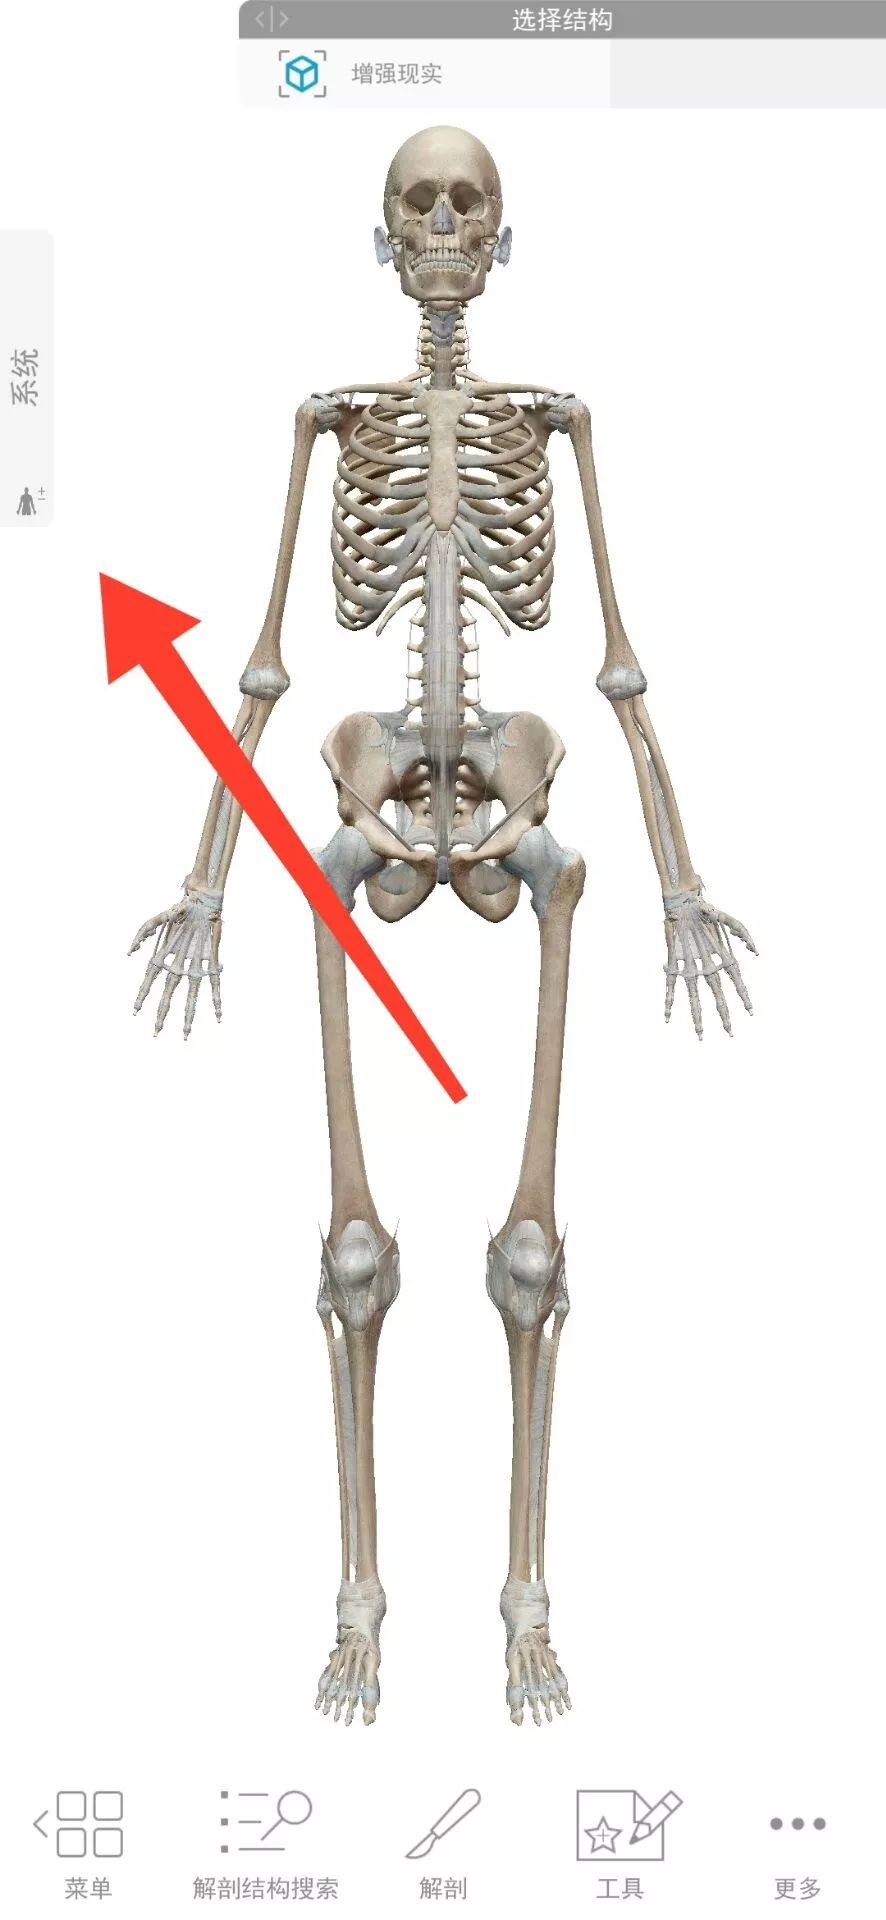 今天给大家分享一款人体解剖学图APP，内容极其重口，慎点！(图5)